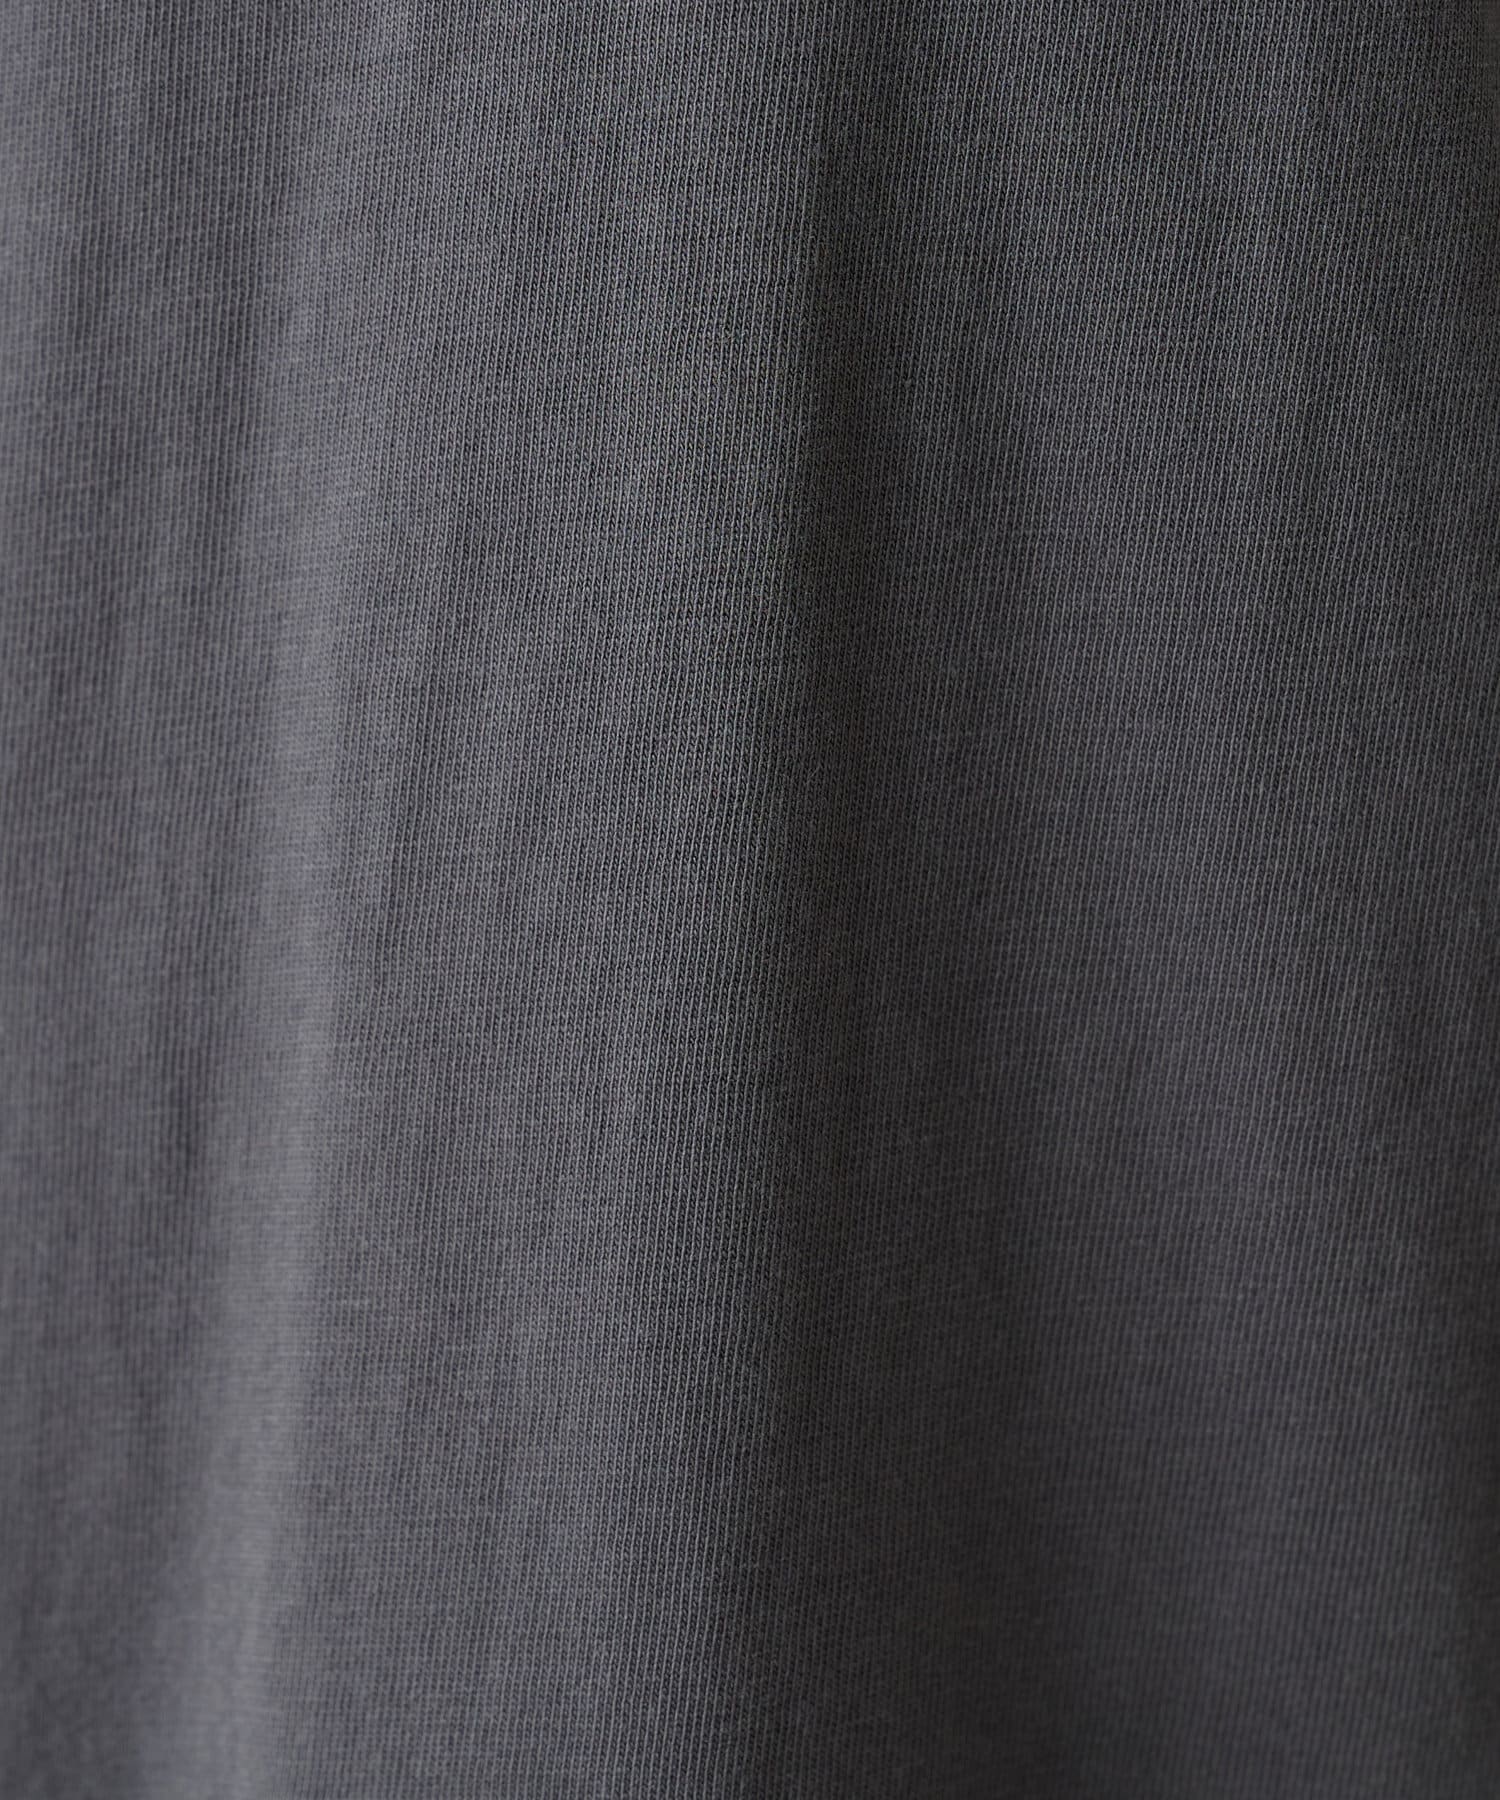 COLLAGE GALLARDAGALANTE(コラージュ ガリャルダガランテ) 【WAVEUNION/ウェーブユニオン】韓国ブランドロゴTシャツ